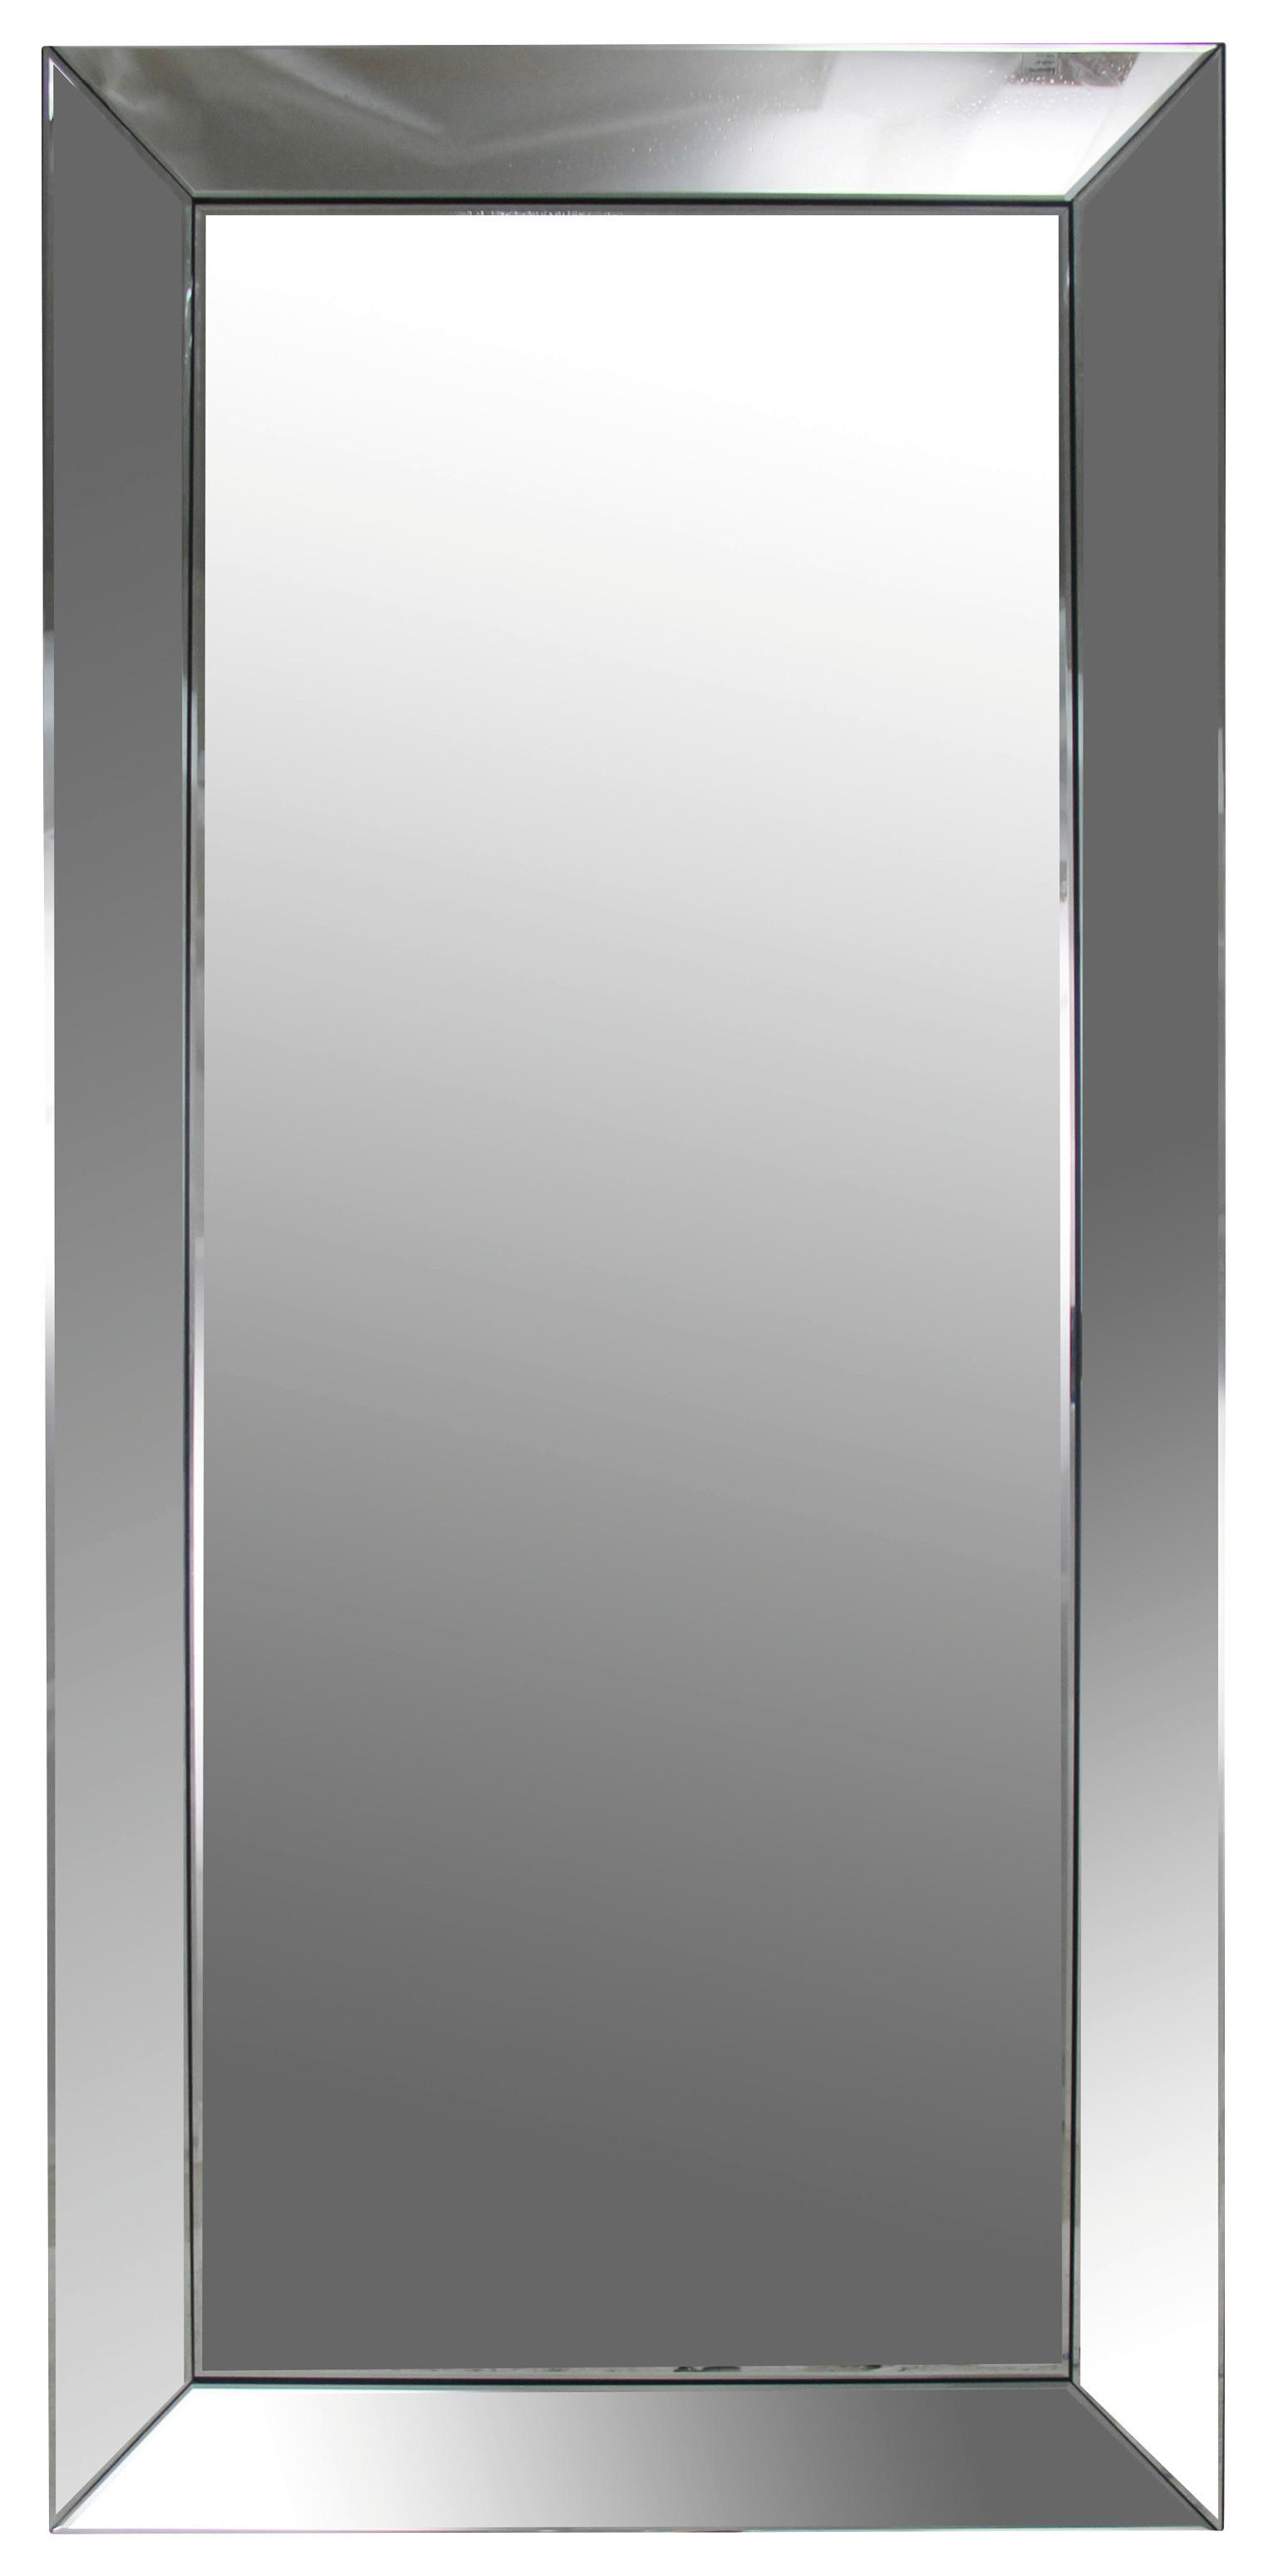 Xora NÁSTĚNNÉ ZRCADLO 88/188/5 cm - barvy stříbra